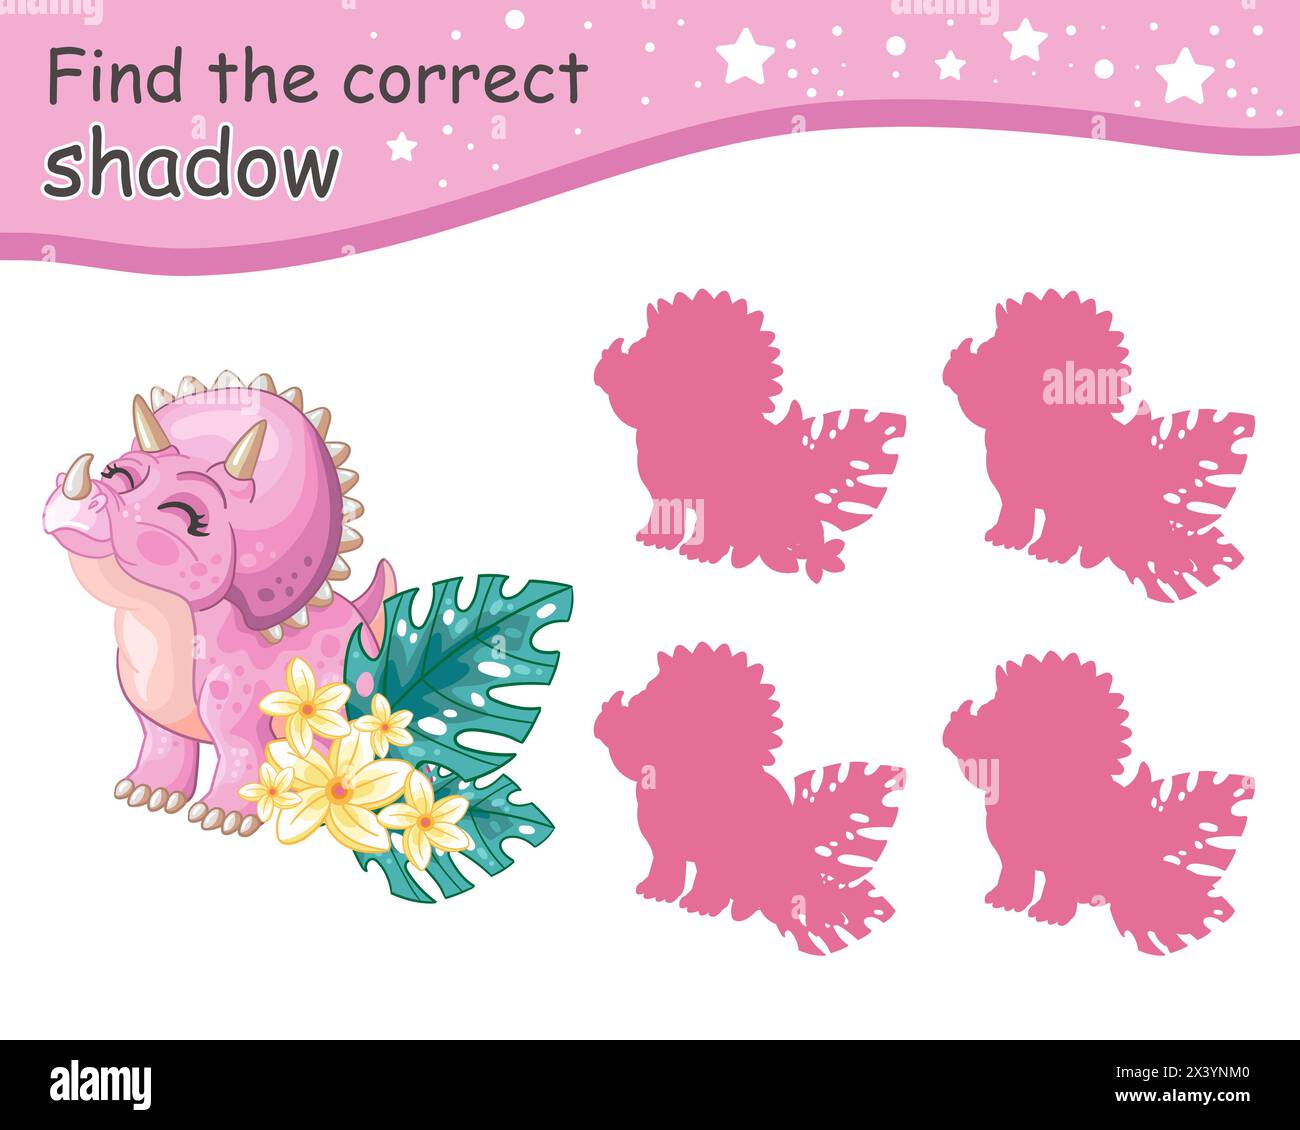 Suchen Sie den richtigen Schatten. Niedlicher triceratops-Dinosaurier mit Blumen. Pädagogisches Matching-Spiel für Kinder mit Zeichentrickfigur. Aktivität, Logik GA Stock Vektor